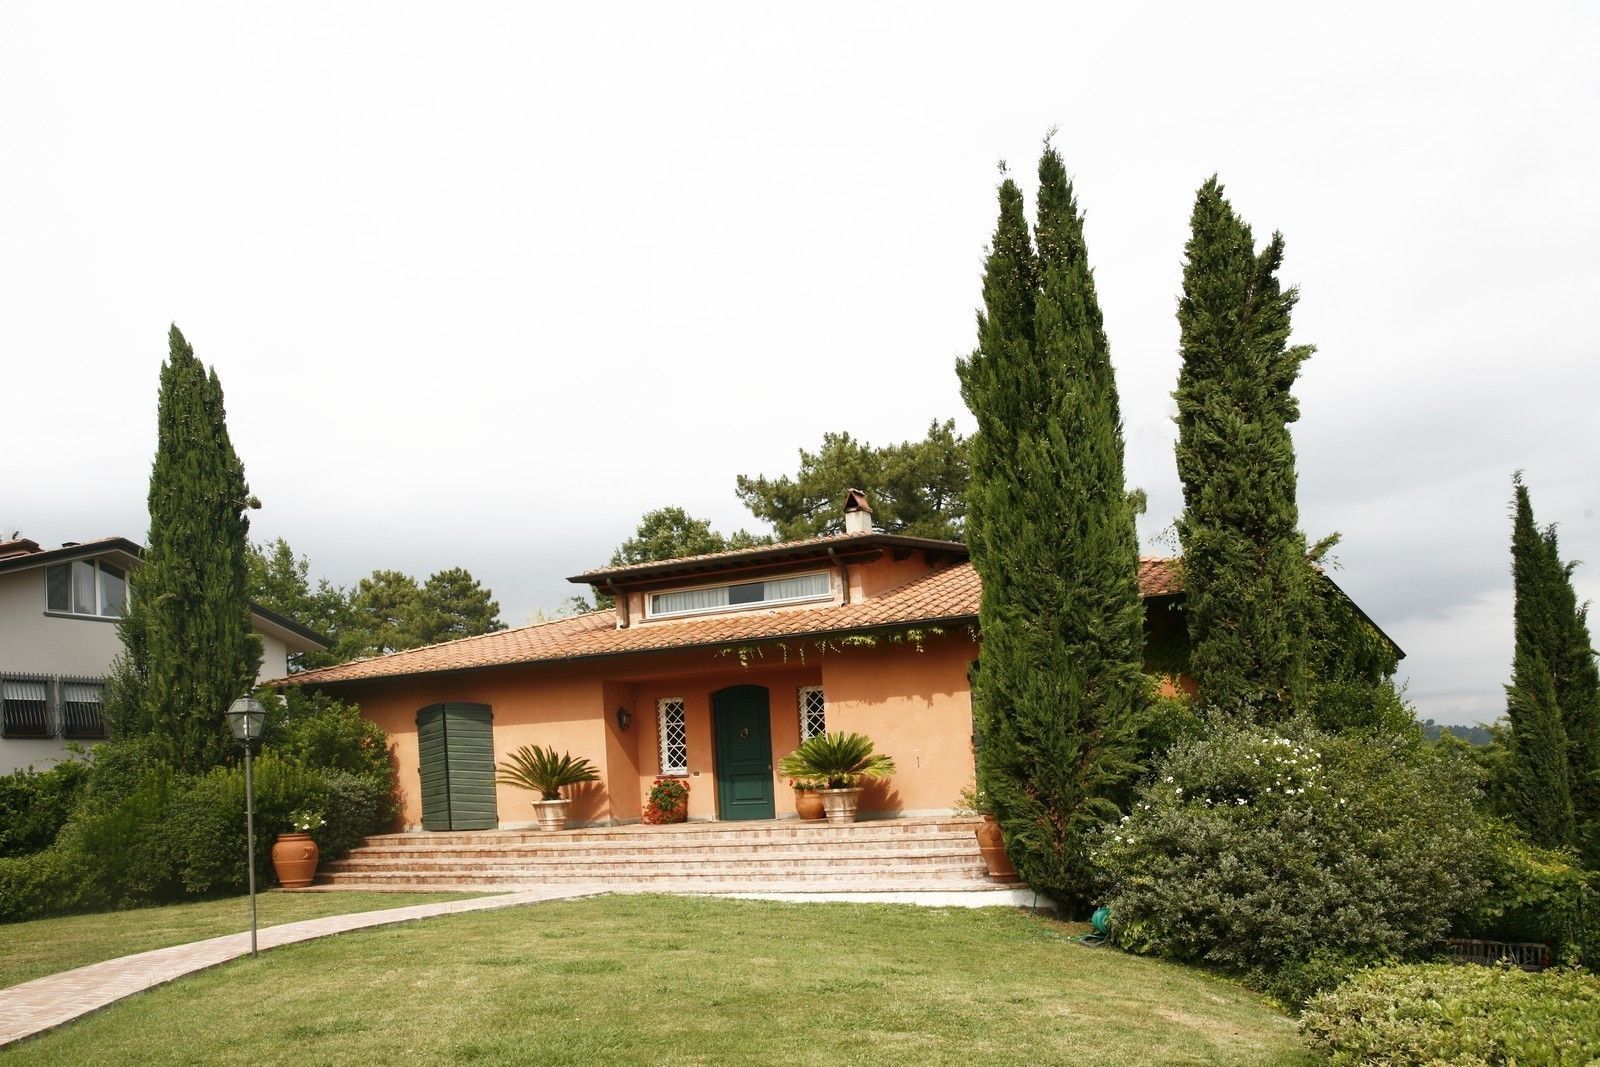 Villa Fotabosco, Studio Tecnico Fanucchi Studio Tecnico Fanucchi Classic style houses